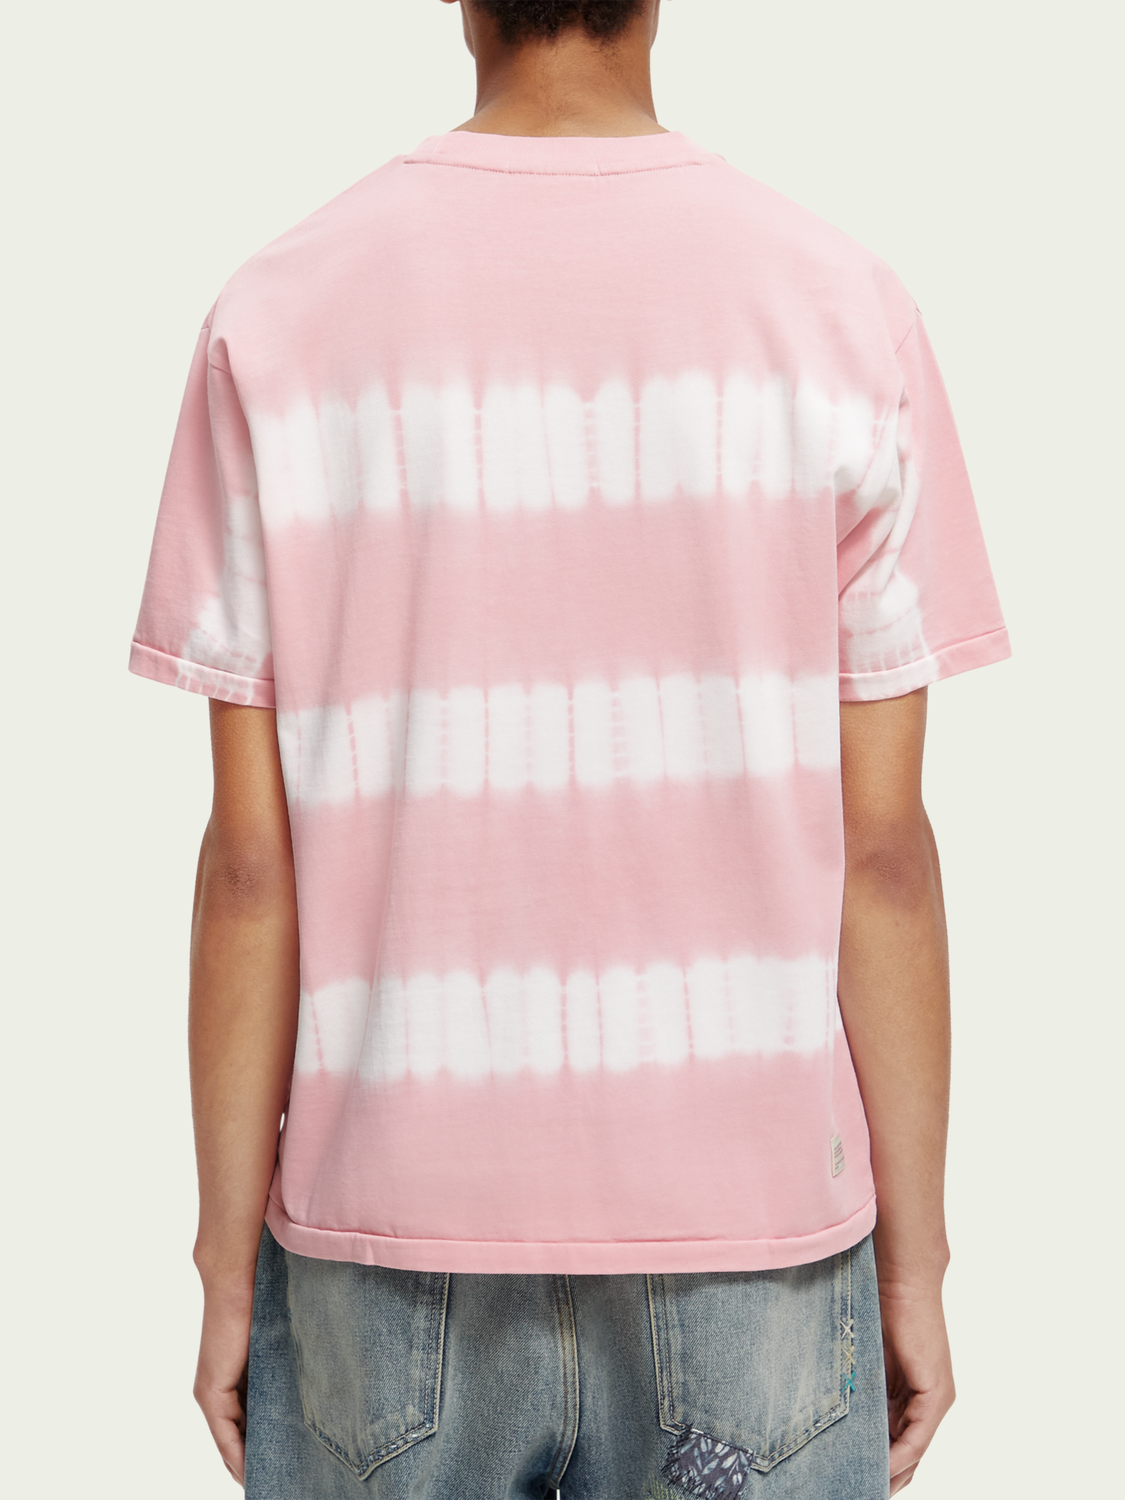 Camiseta relaxed fit de algodón orgánico con teñido anudado